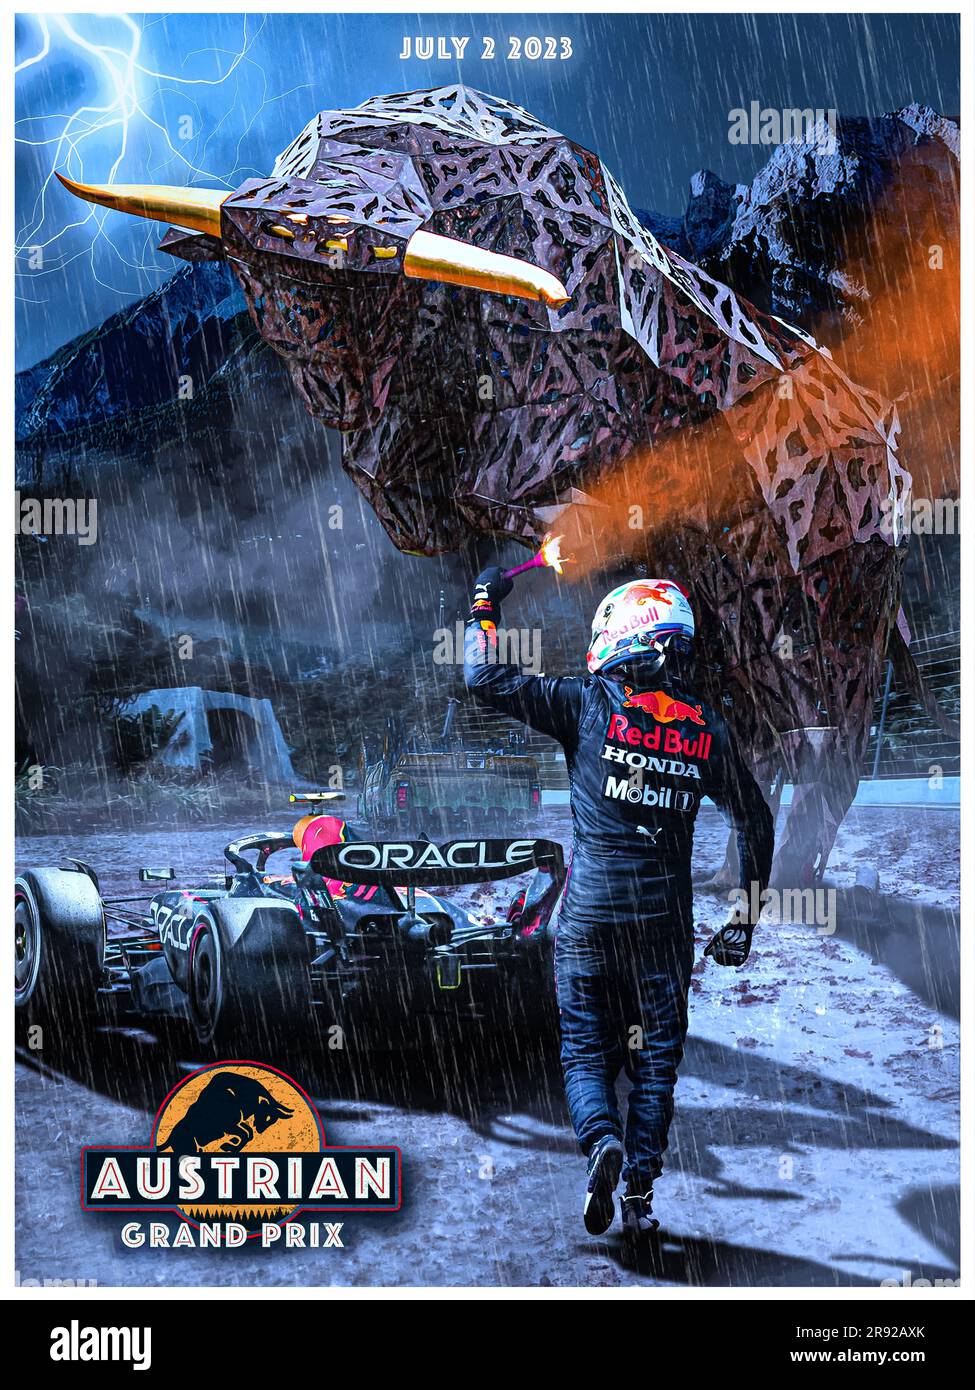 Poster gara del Gran Premio di F1 austriaco 2023 Foto Stock